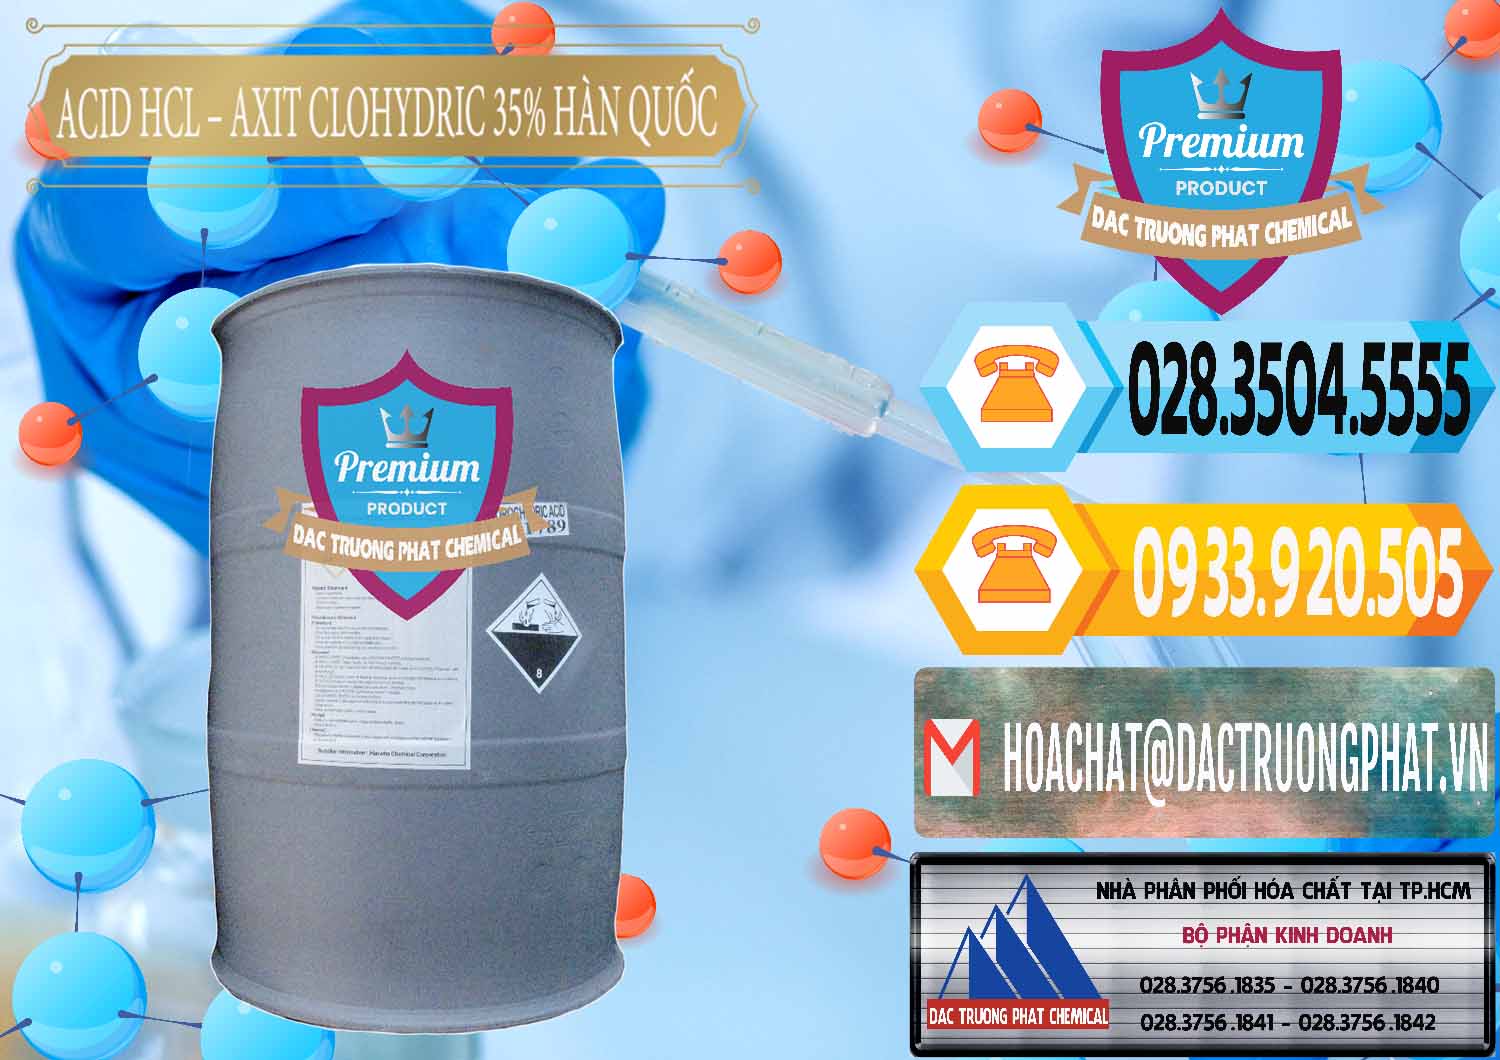 Đơn vị kinh doanh & bán Acid HCL - Axit Cohidric 35% Hàn Quốc Korea - 0011 - Cty cung cấp - bán hóa chất tại TP.HCM - hoachattayrua.net